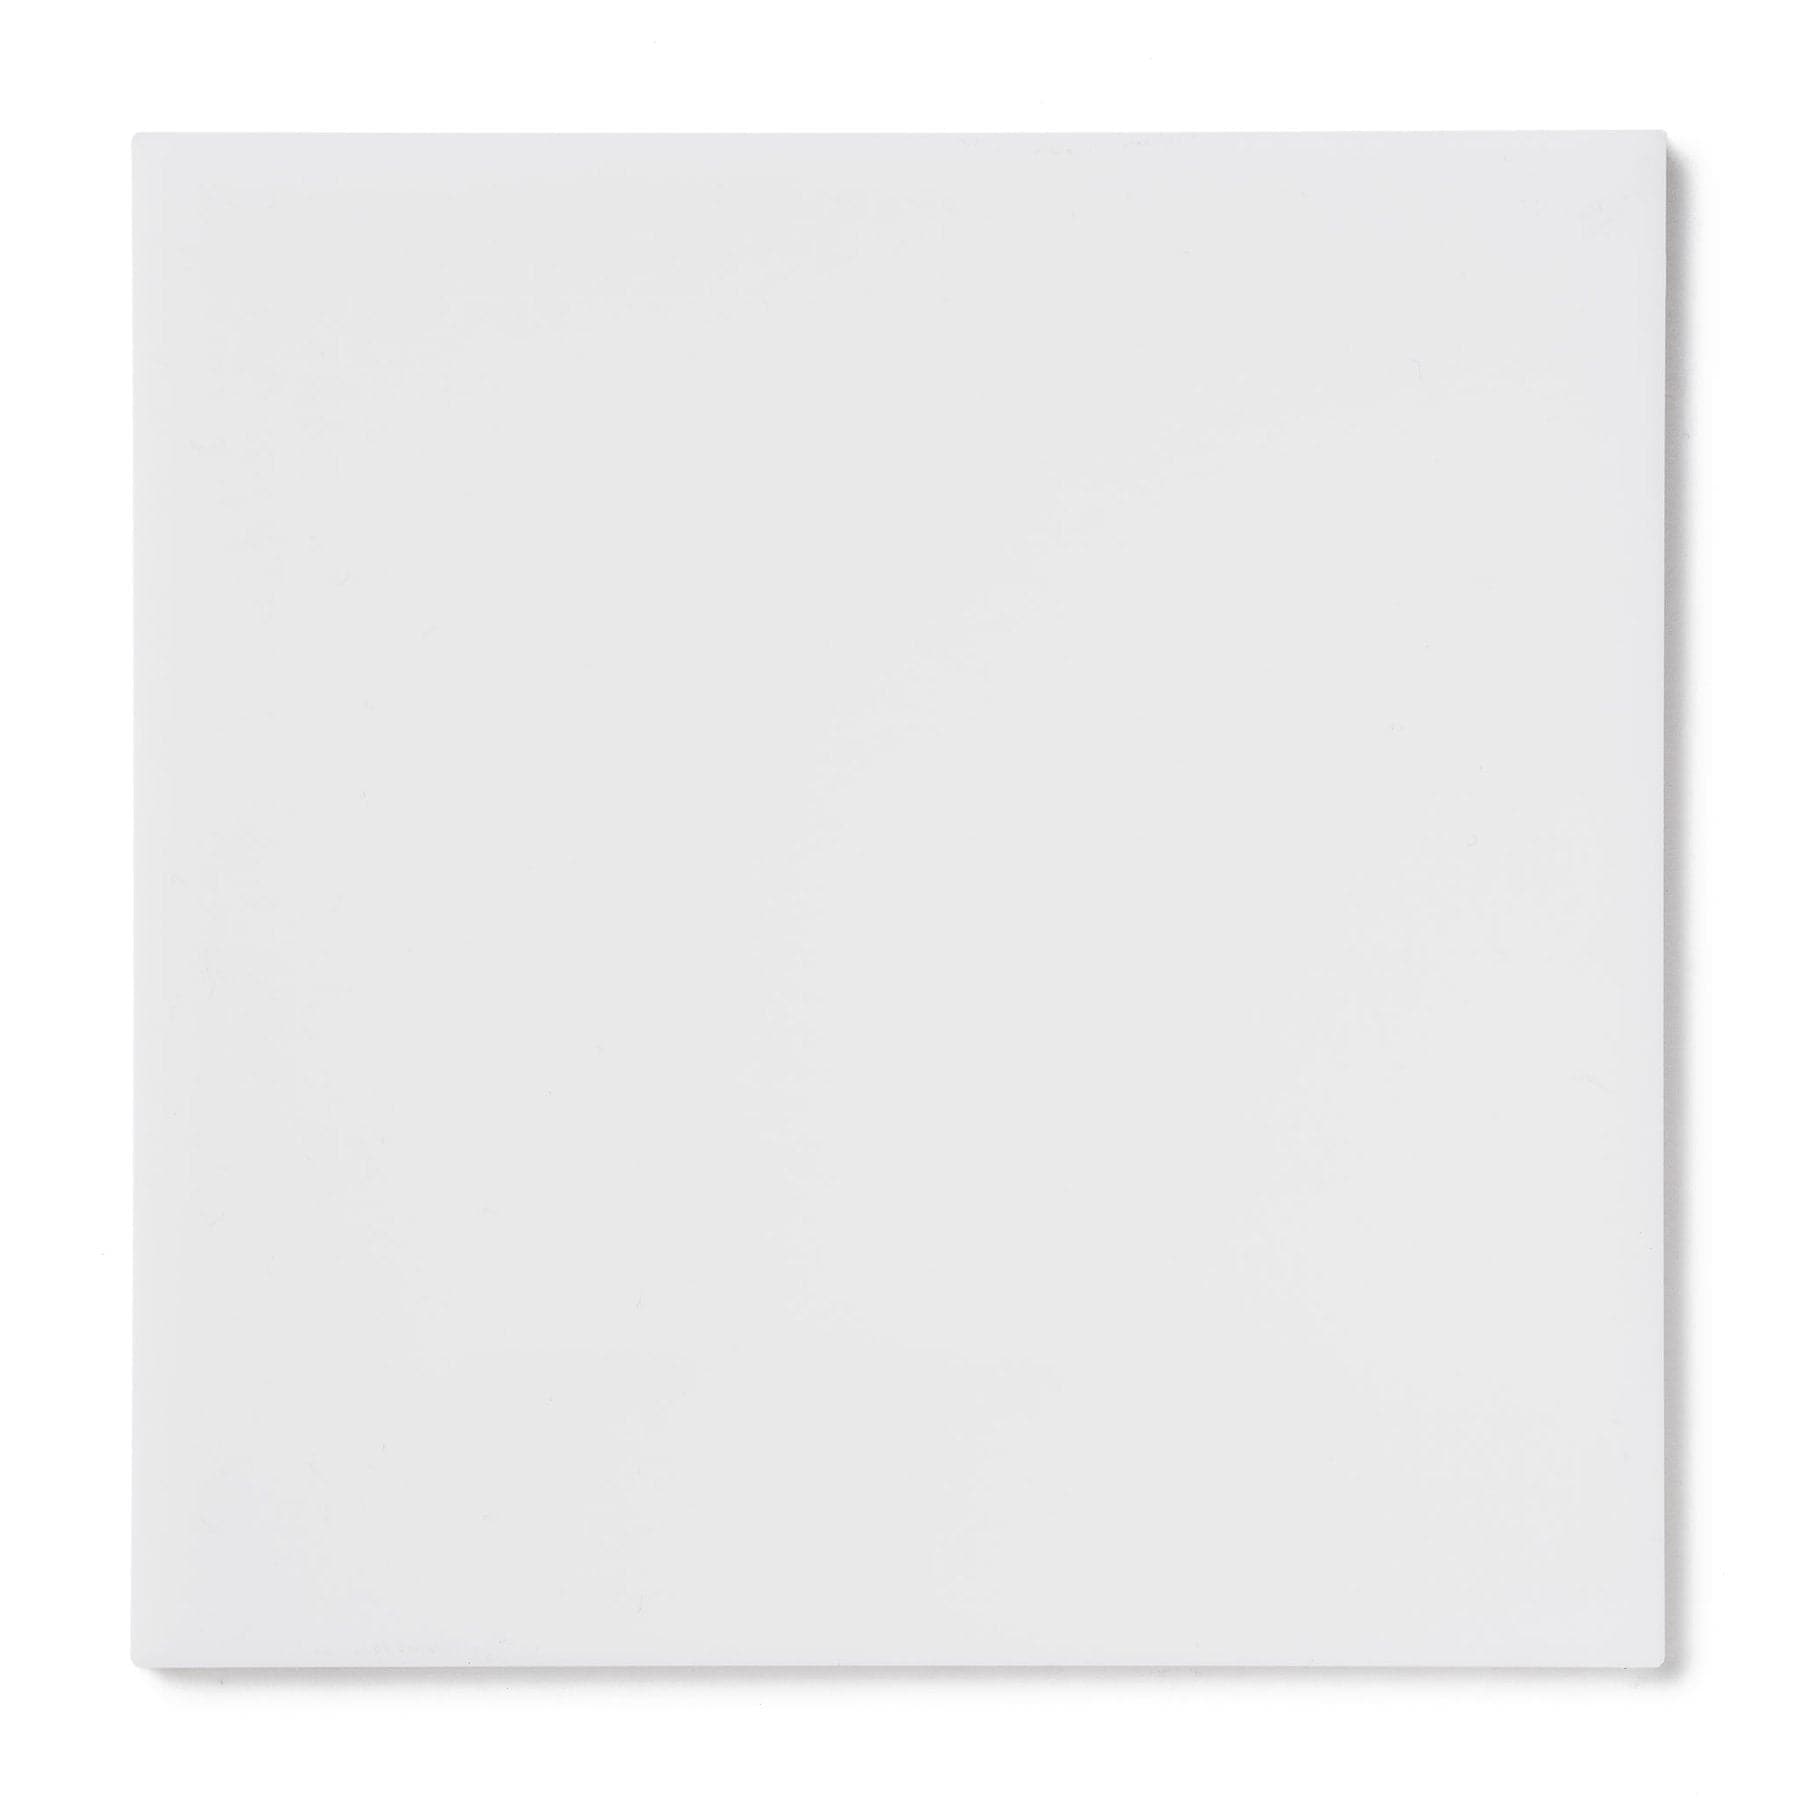 Acrylic Sheet 3/16" White Opaque #7508